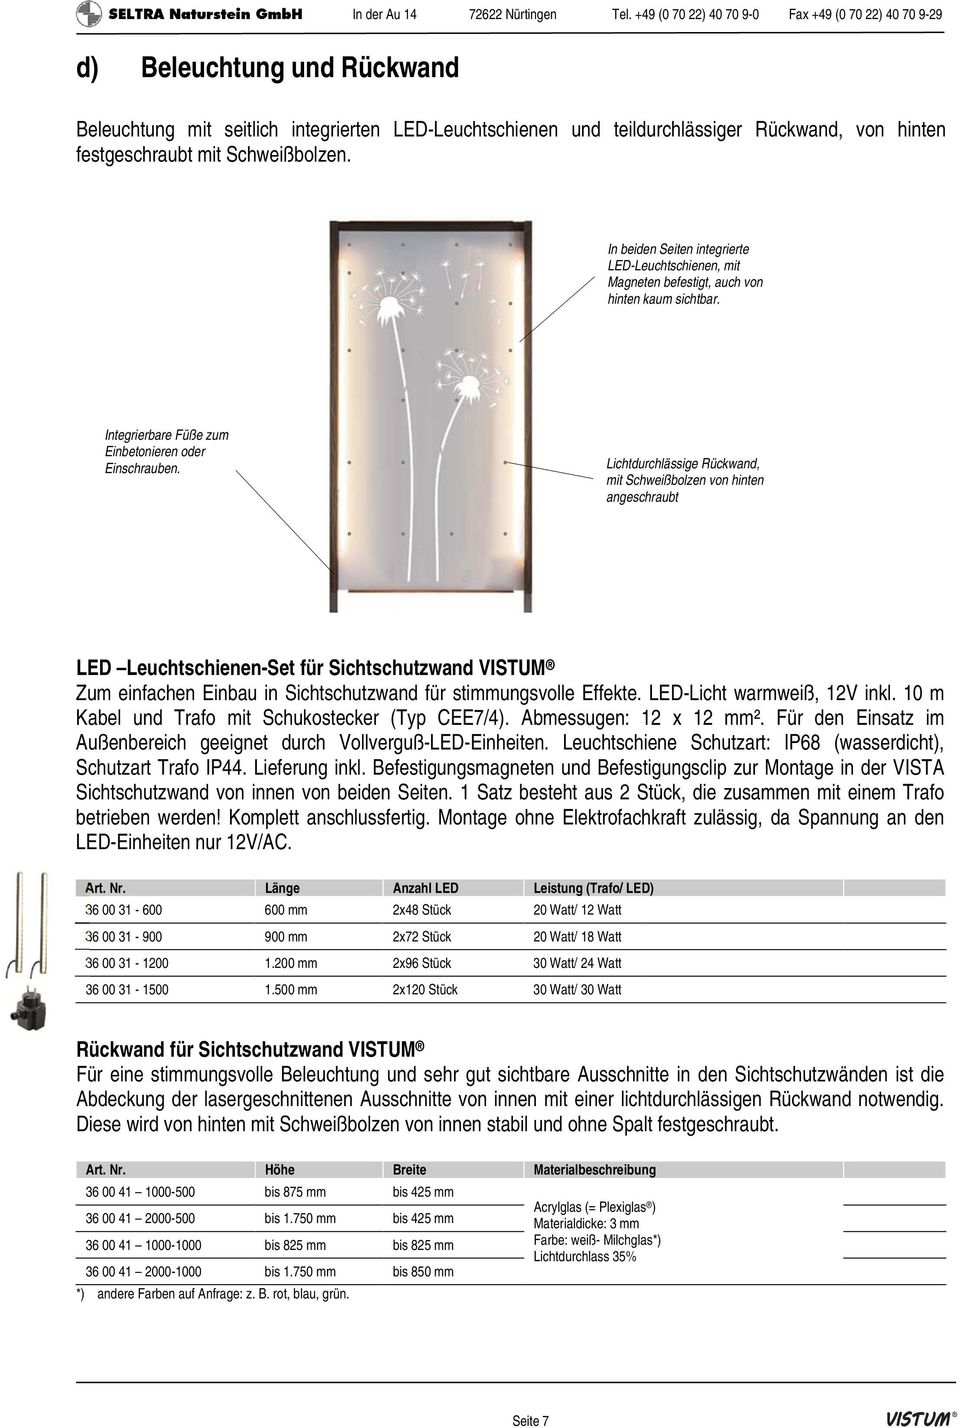 Lichtdurchlässige Rückwand, mit Schweißbolzen von hinten angeschraubt LED Leuchtschienen-Set für Sichtschutzwand VISTUM Zum einfachen Einbau in Sichtschutzwand für stimmungsvolle Effekte.